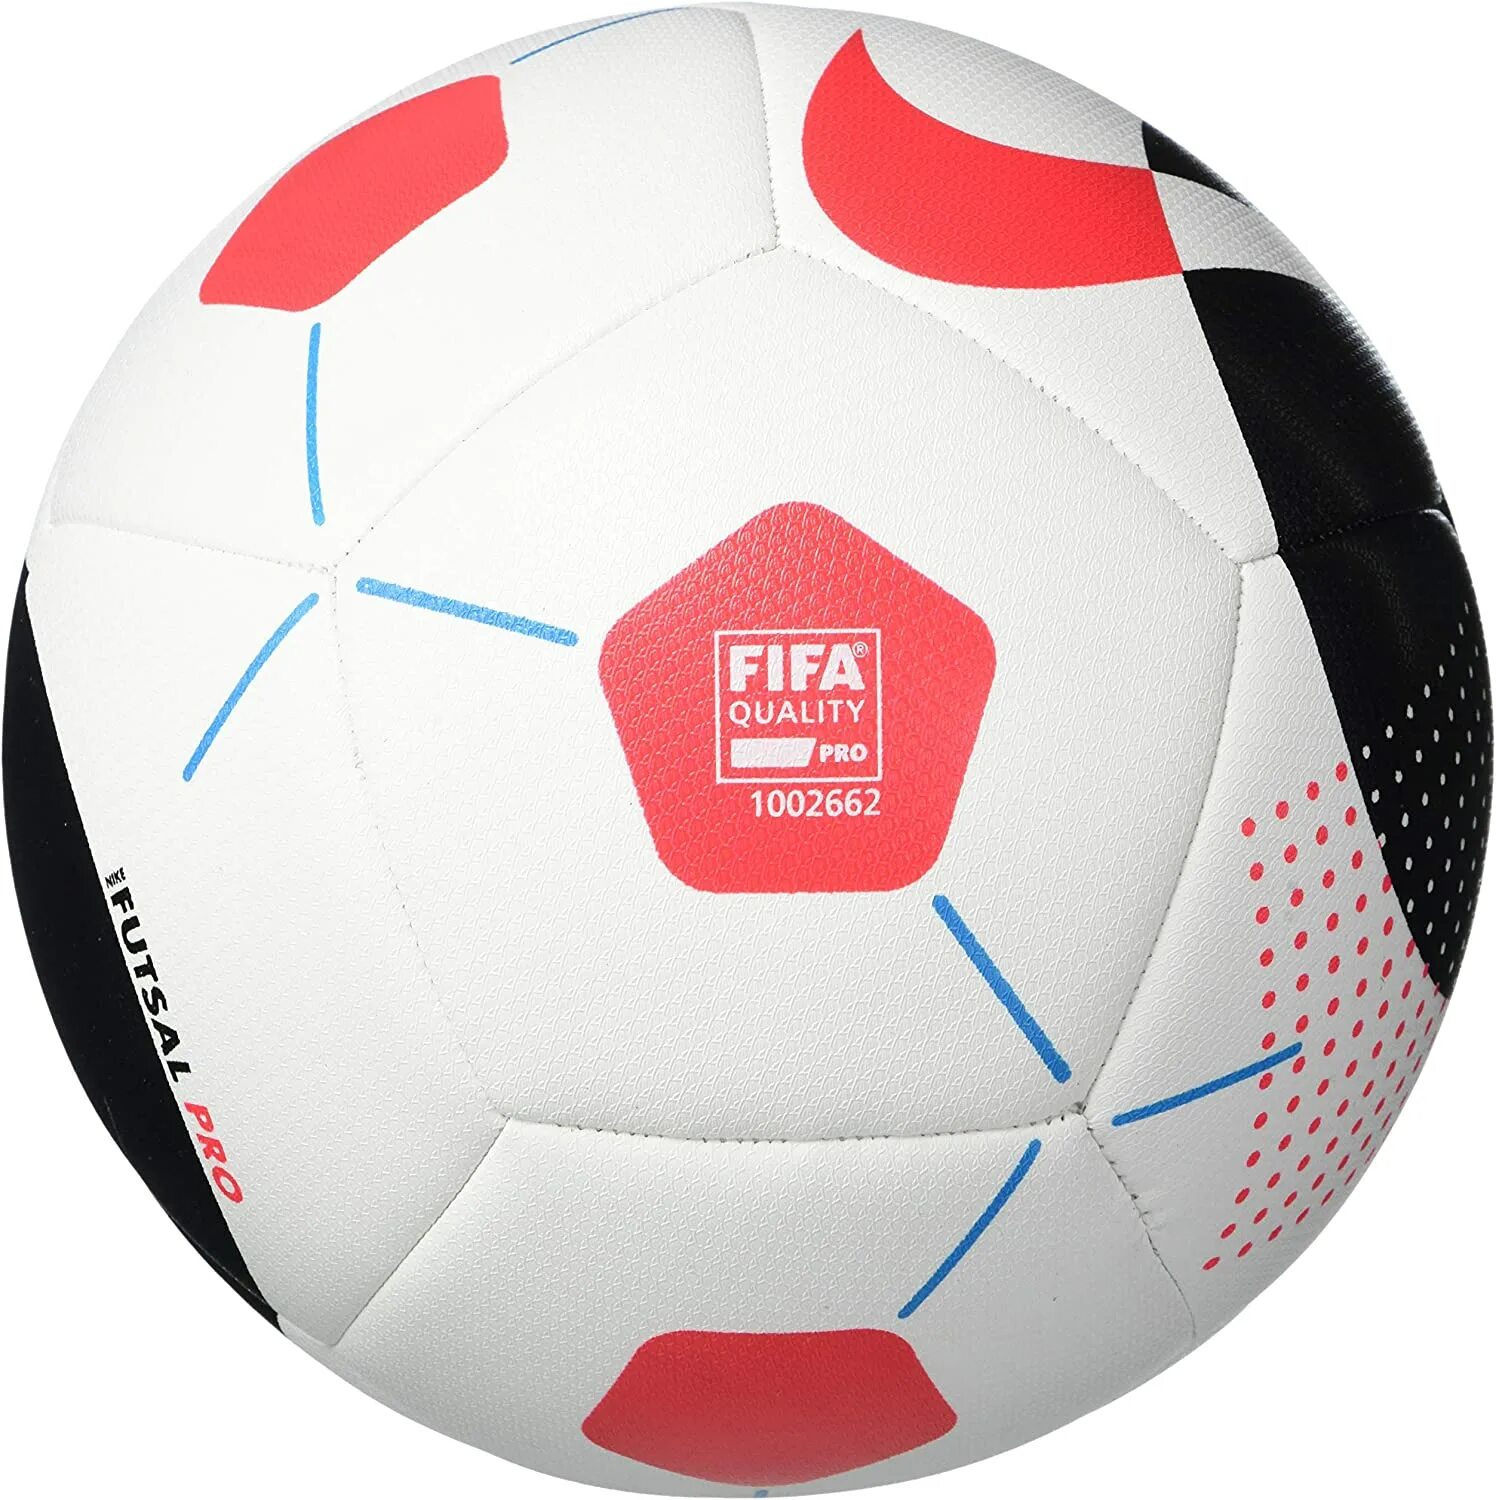 Мяч Nike FIFA quality Pro. Мяч футзальный найк 1002662. Футбольный мяч Nike Futsal Pro. Мяч Nike FIFA quality 2006-2007.